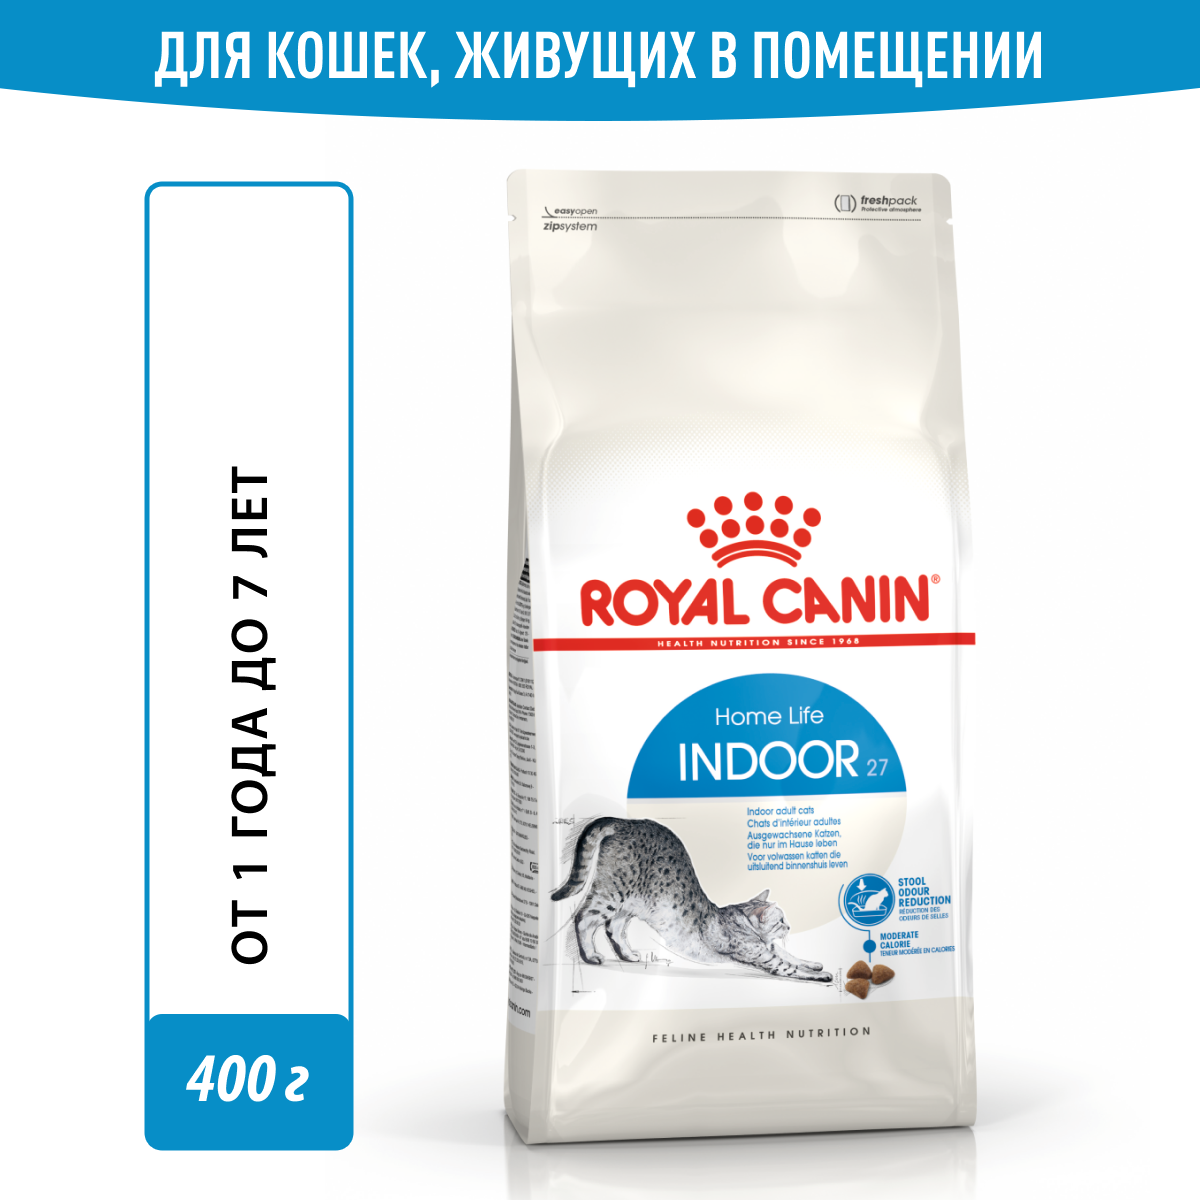 Royal Canin Indoor 27 Корм для кошек, живущих в помещении 400г